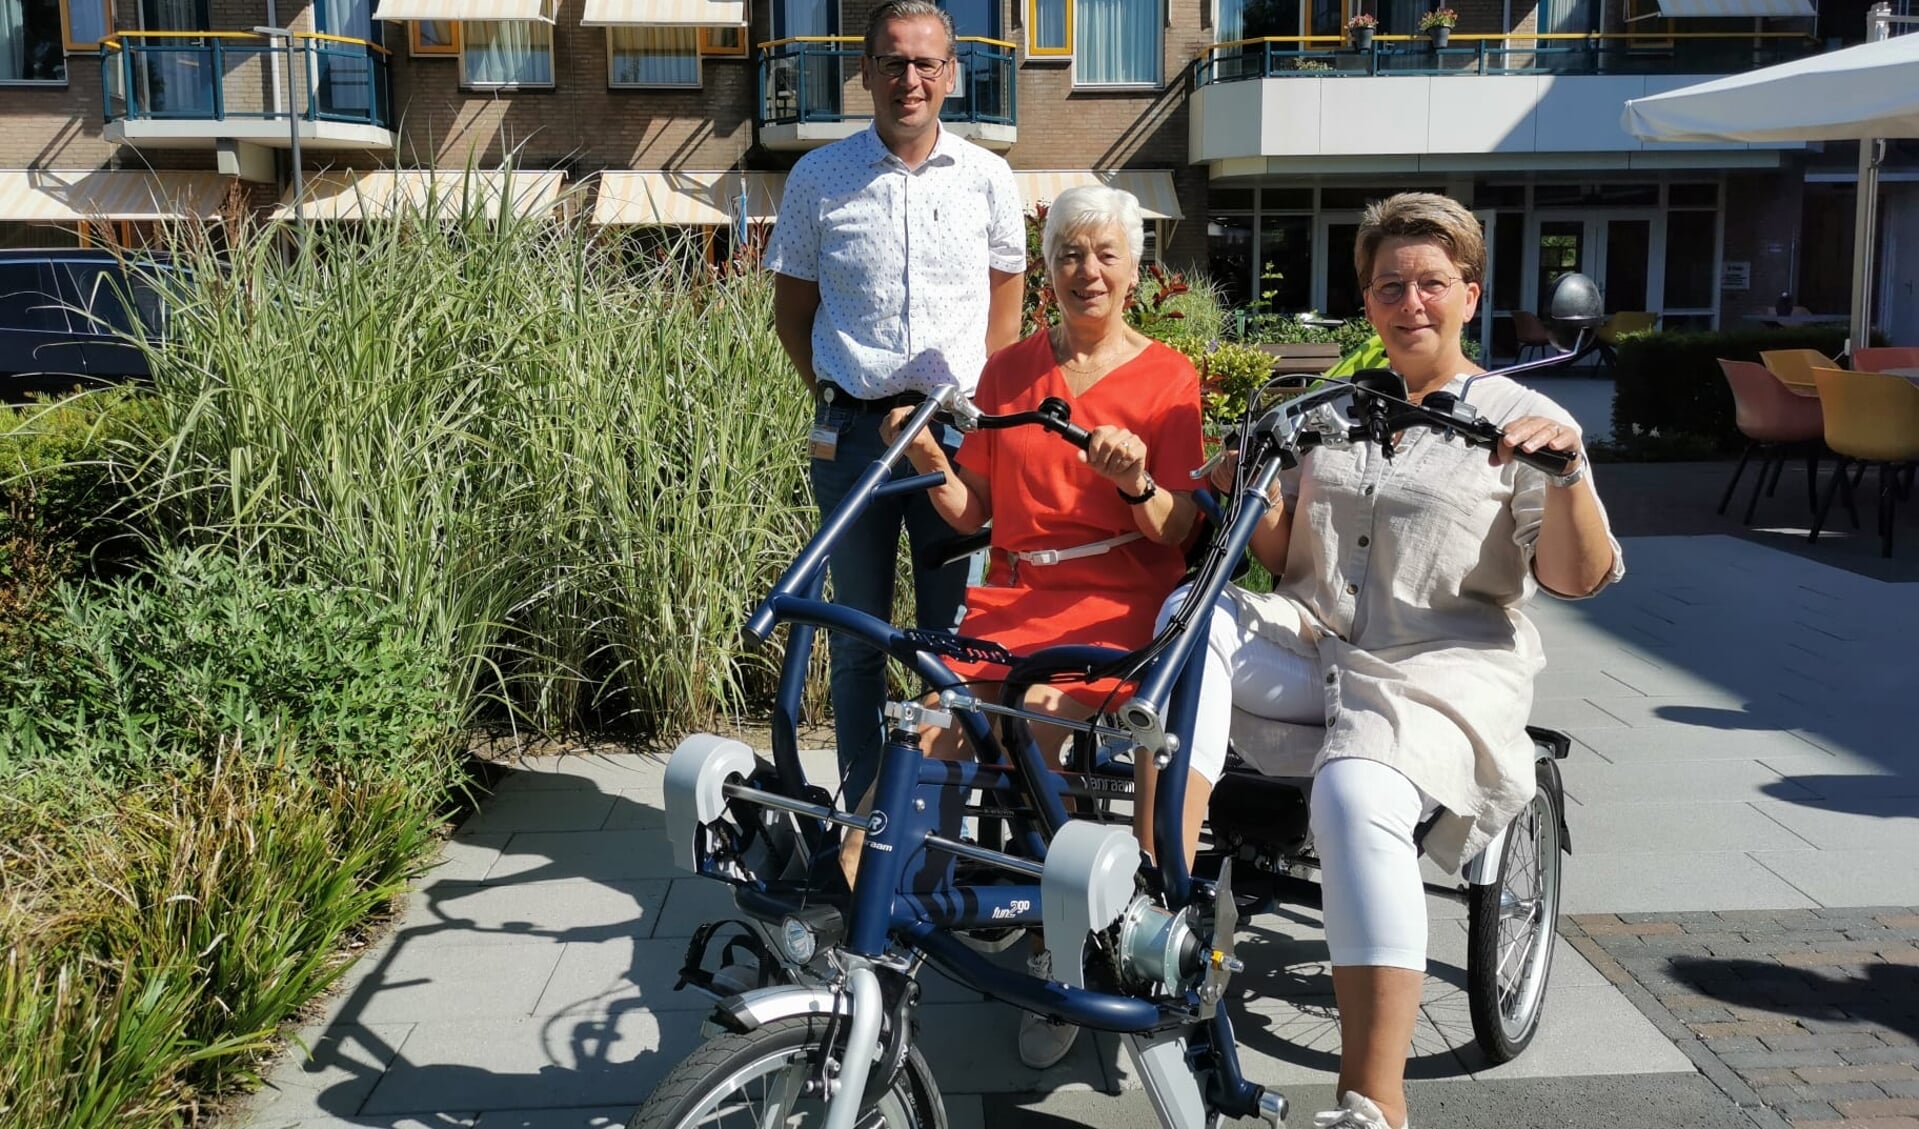 Sinis Profetie defect Kringloop de Cirkel schenkt duo-fiets aan Pedaja - Het Kompas  Hardinxveld-Giessendam | Nieuws uit de regio